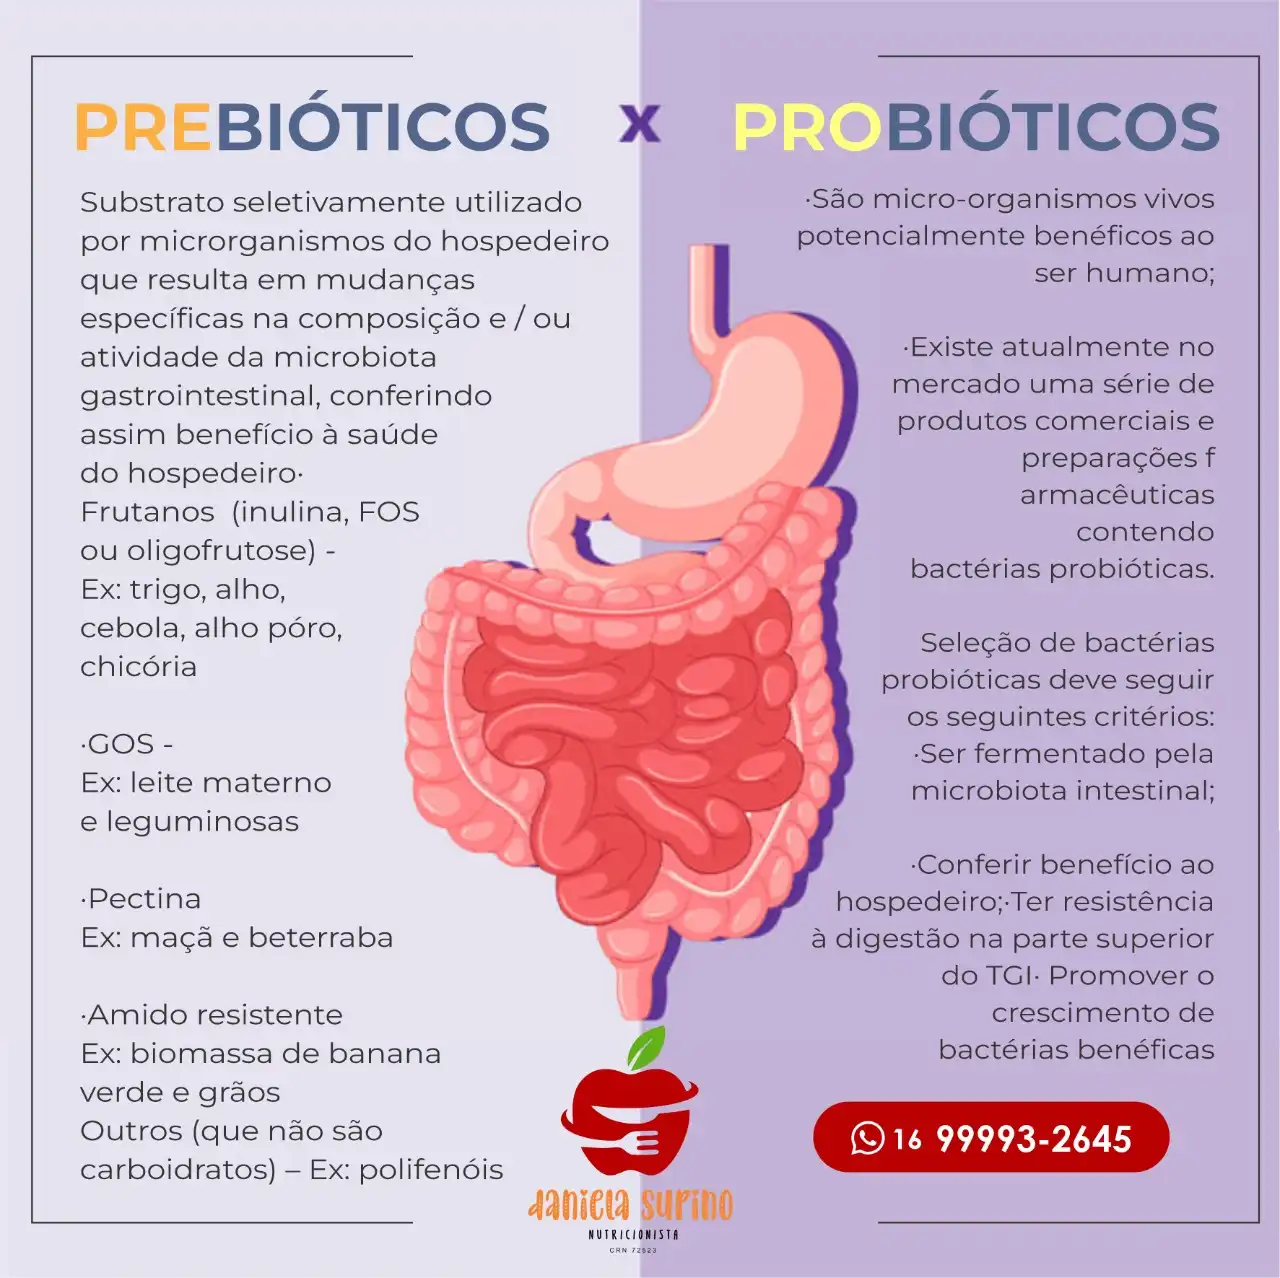 
Propaganda Post Prebióticos e Probióticos para Nutricionista



